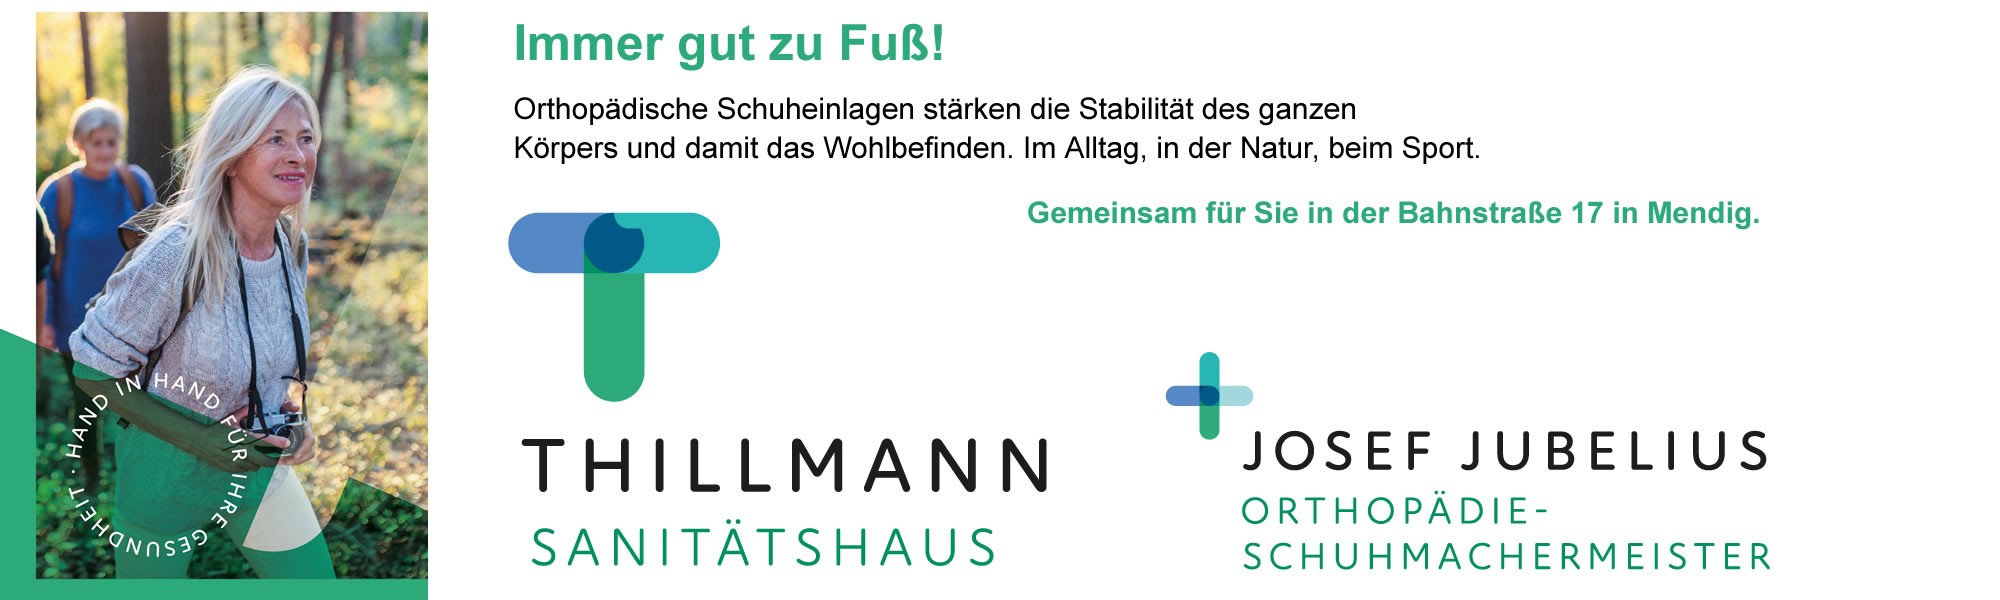 Das Sanitätshaus Thillmann und Schuhorthopädietechnik Jubelius bündeln ihre Kompetenzen!